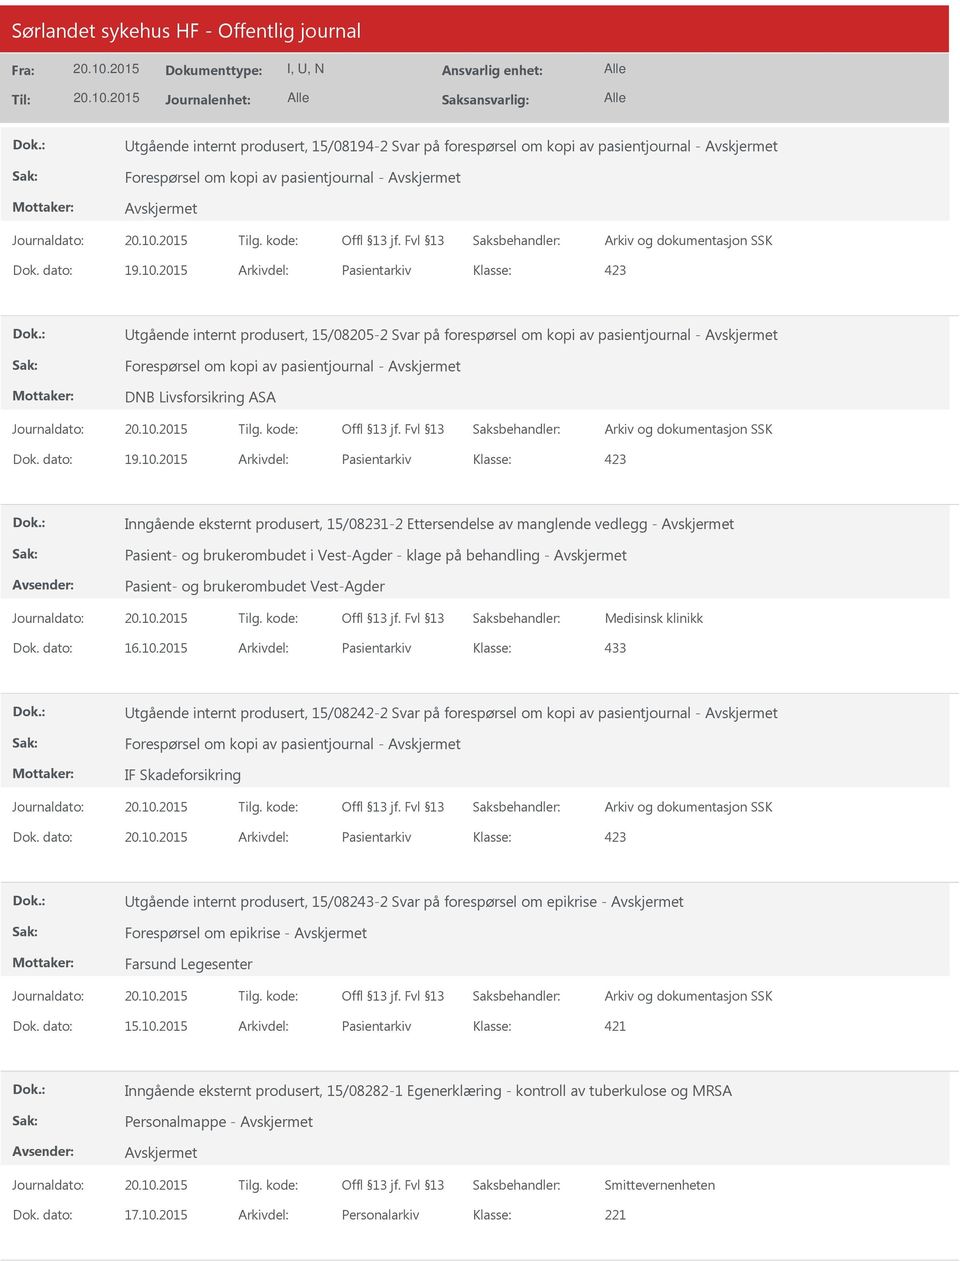 2015 Arkivdel: Pasientarkiv Inngående eksternt produsert, 15/08231-2 Ettersendelse av manglende vedlegg - Pasient- og brukerombudet i Vest-Agder - klage på behandling - Pasient- og brukerombudet